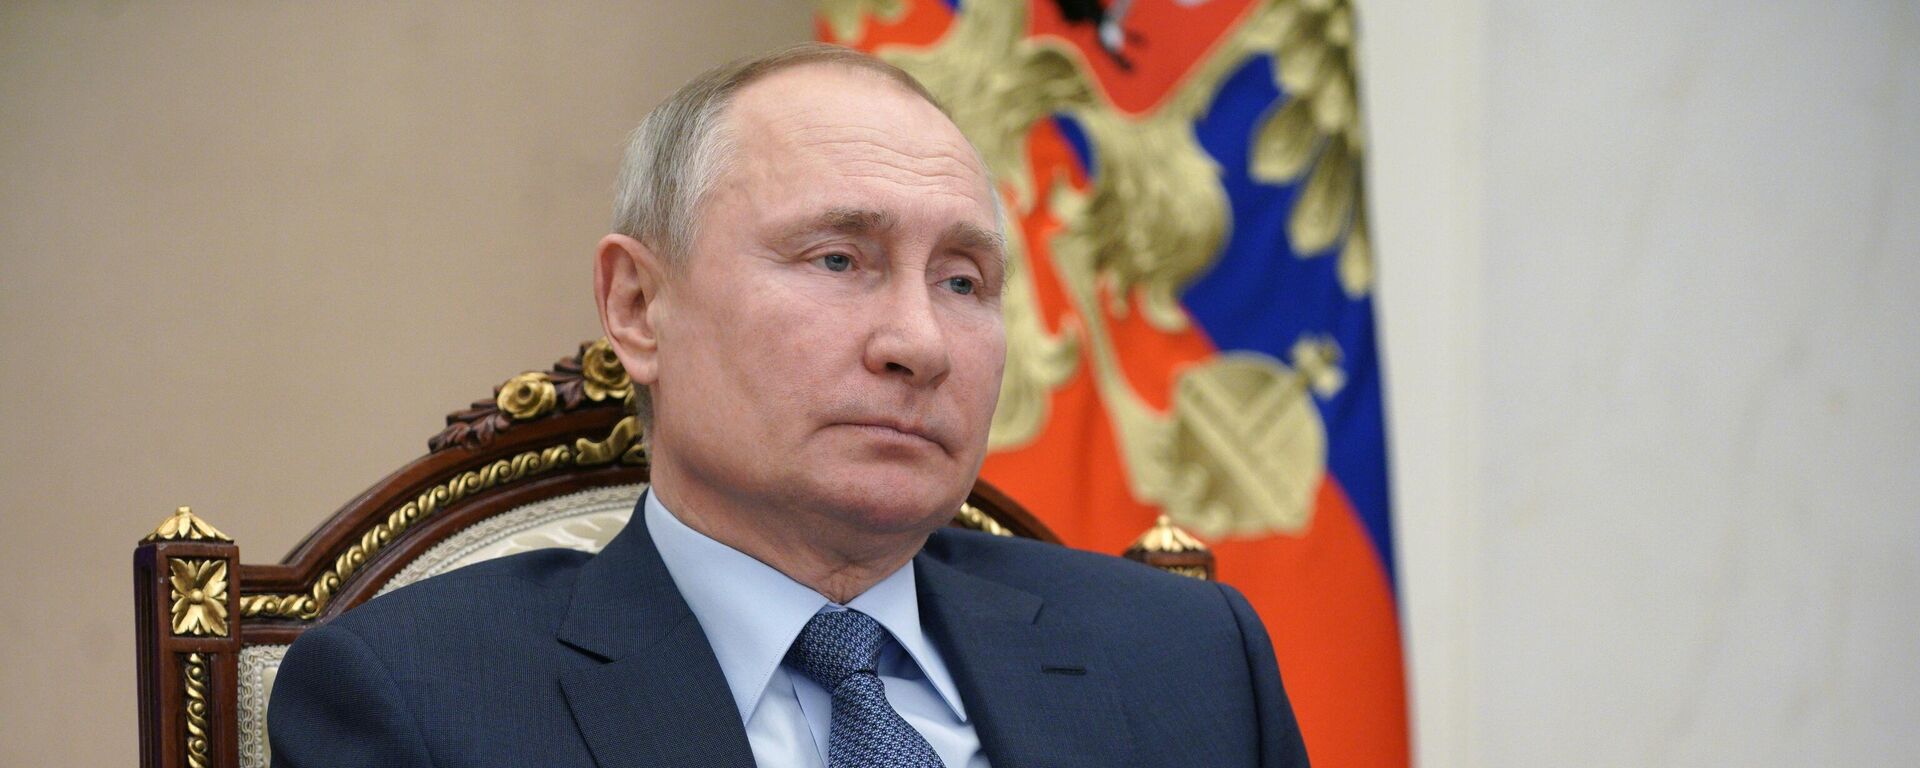 Vladímir Putin, presidente ruso - Sputnik Mundo, 1920, 22.04.2021